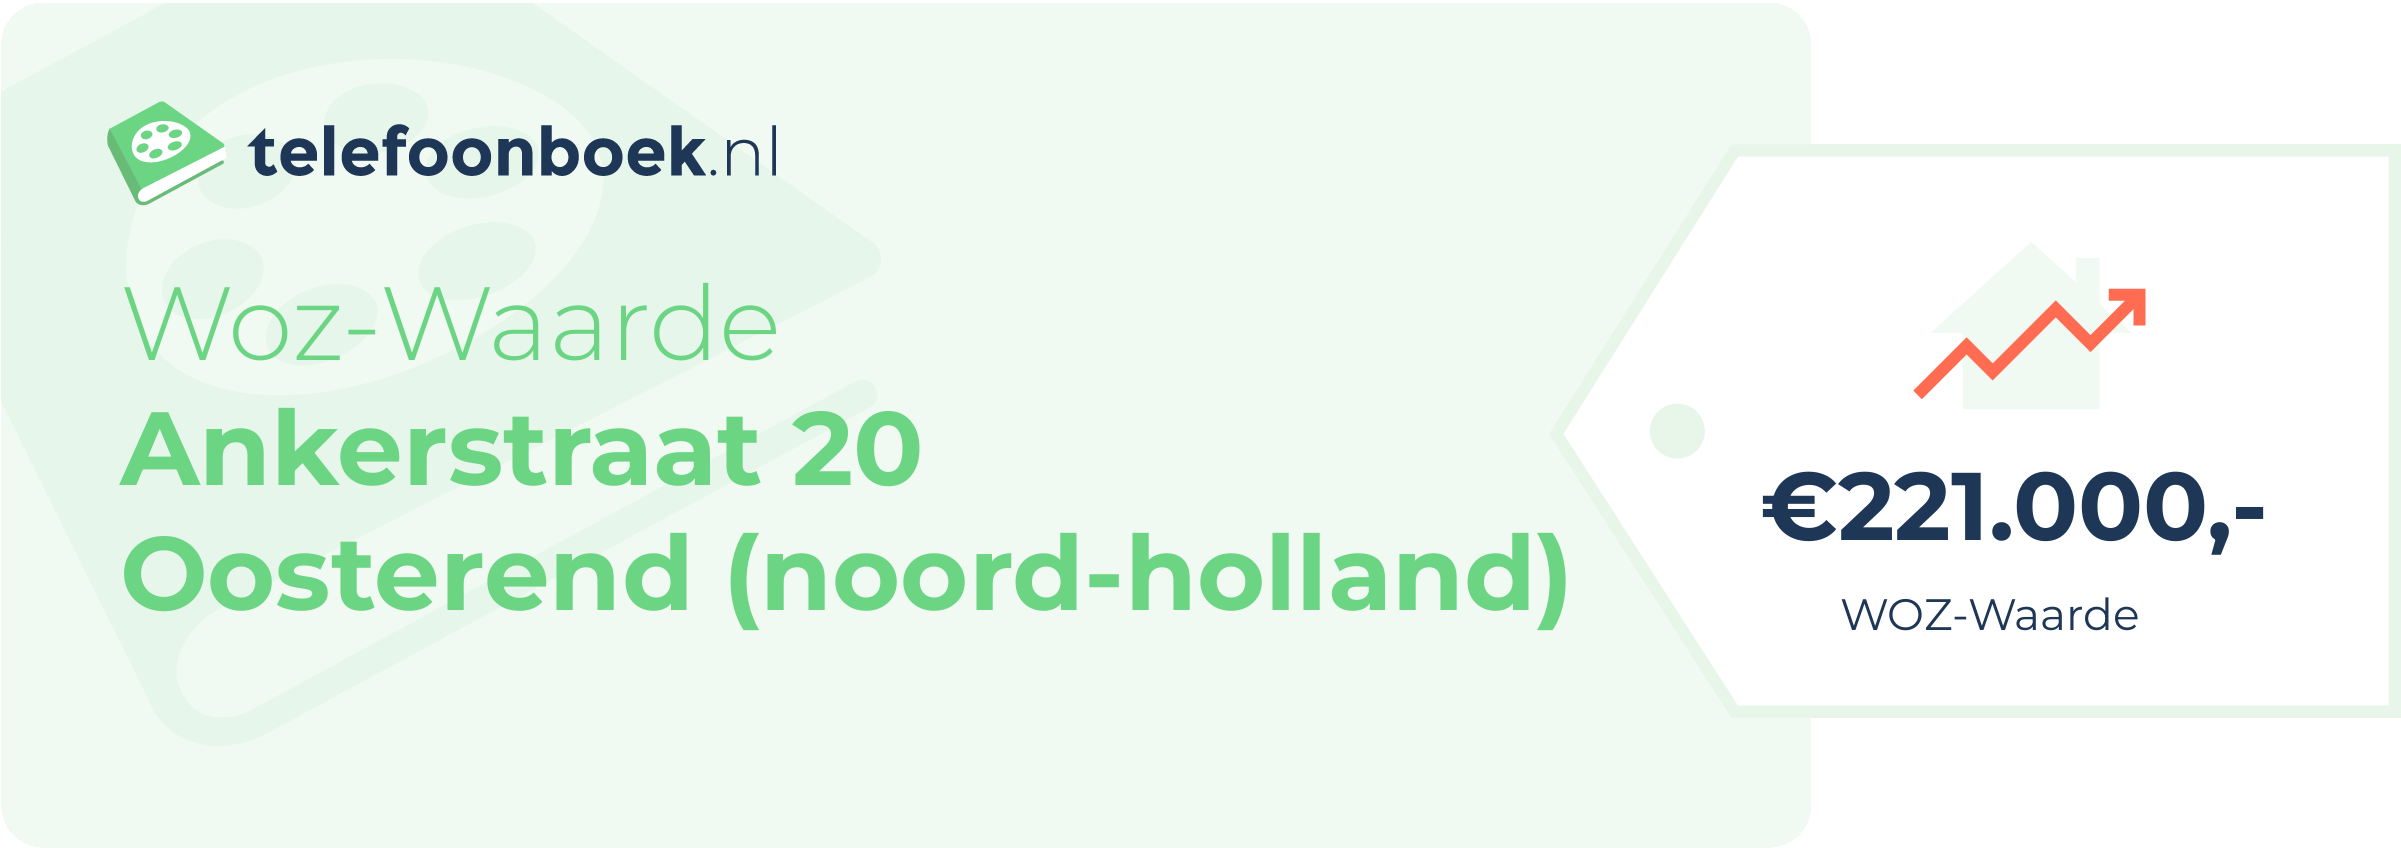 WOZ-waarde Ankerstraat 20 Oosterend (Noord-Holland)